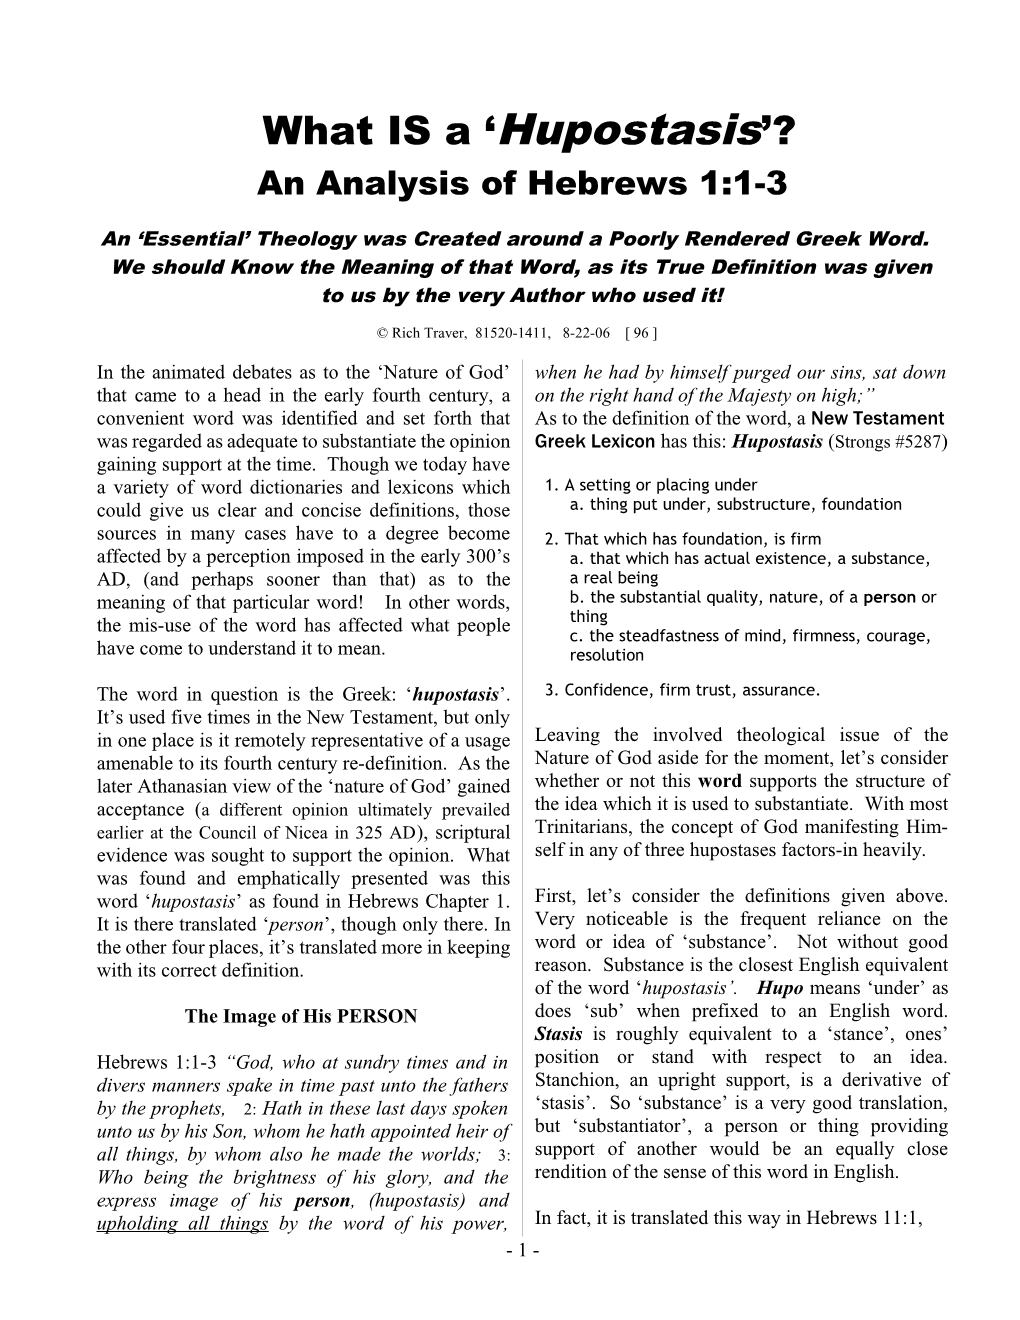 An Analysis of Hebrews 1:1-3